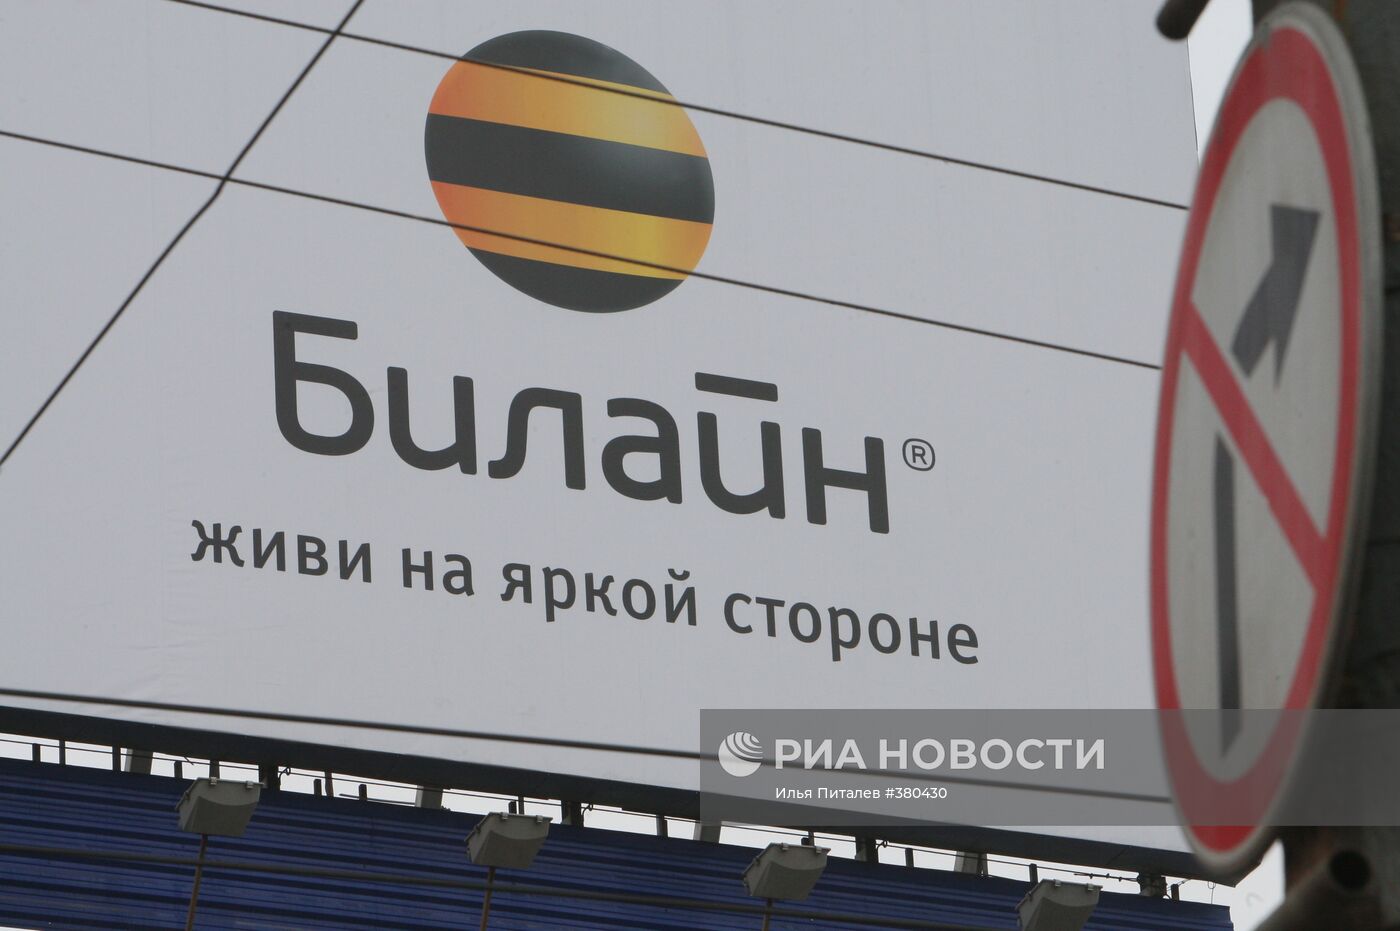 Реклама оператора сотовой связи компании "Билайн" в Москве